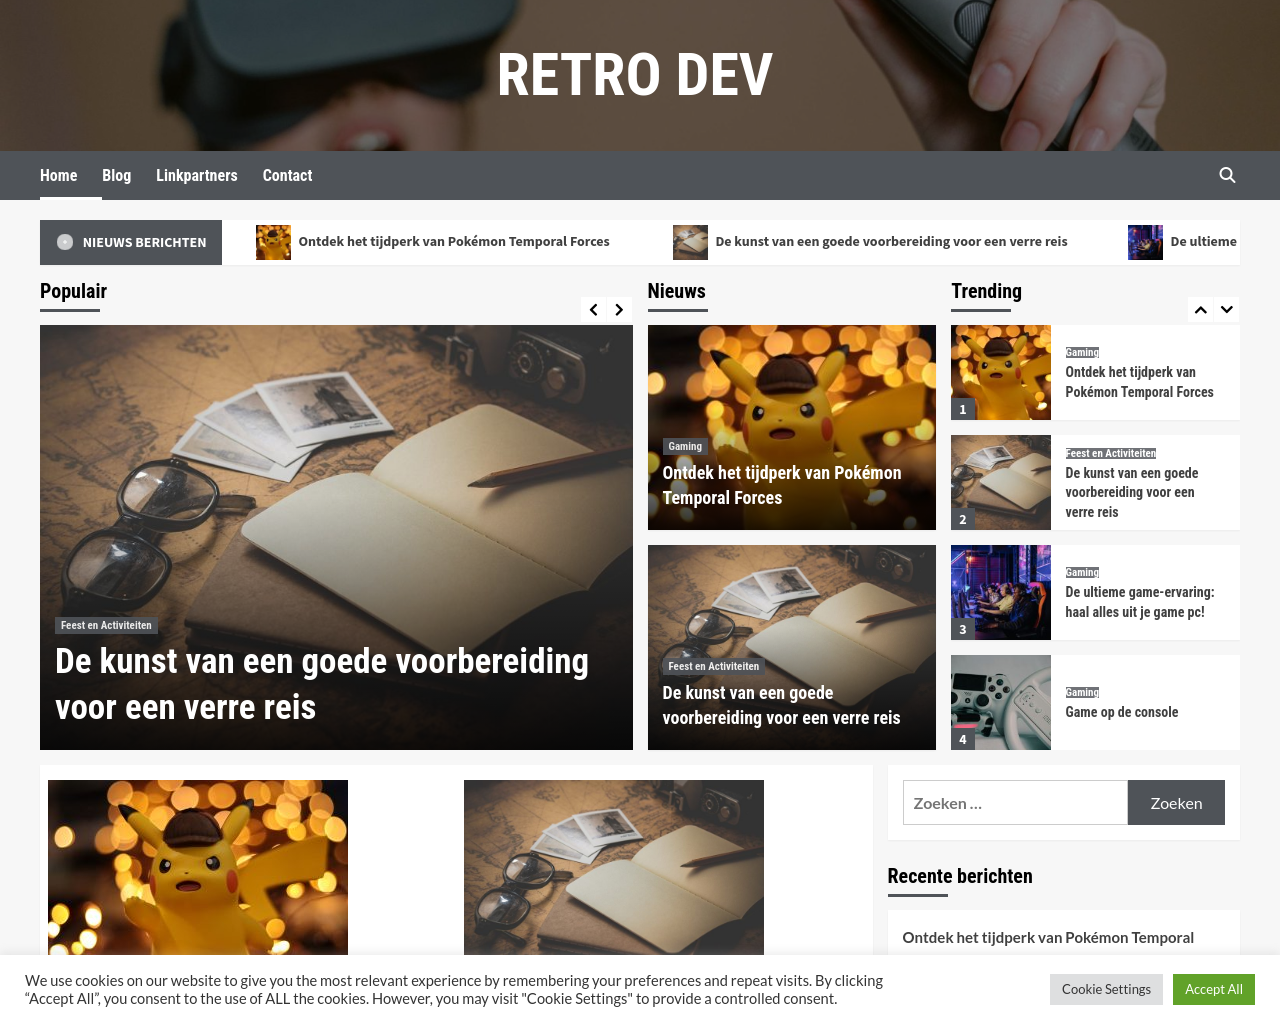 retrodev.nl